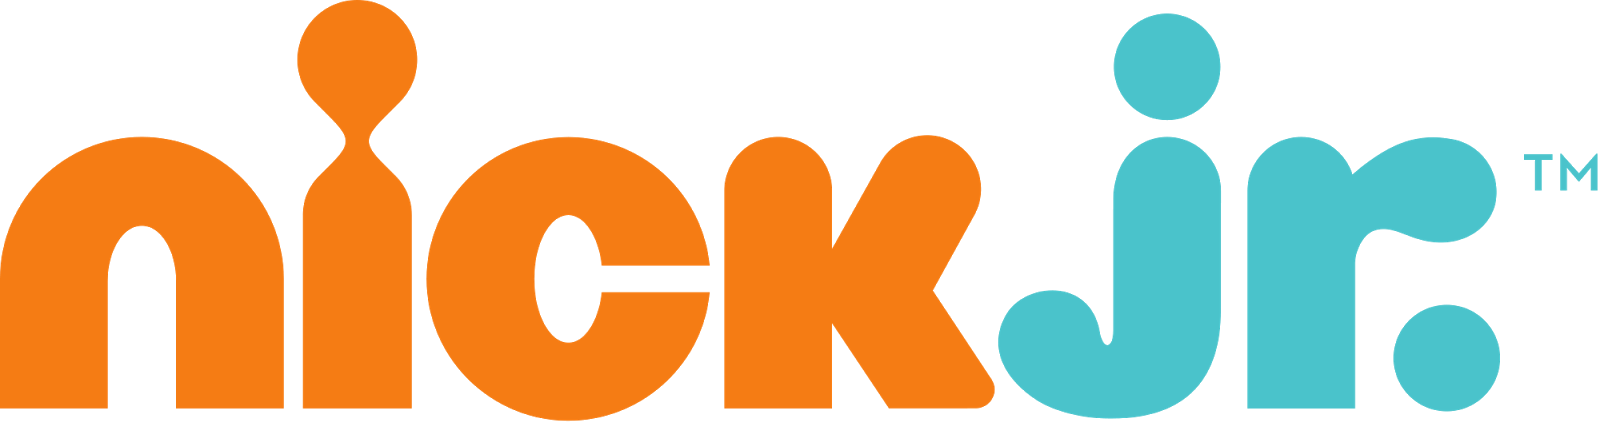 logo nick jr.png